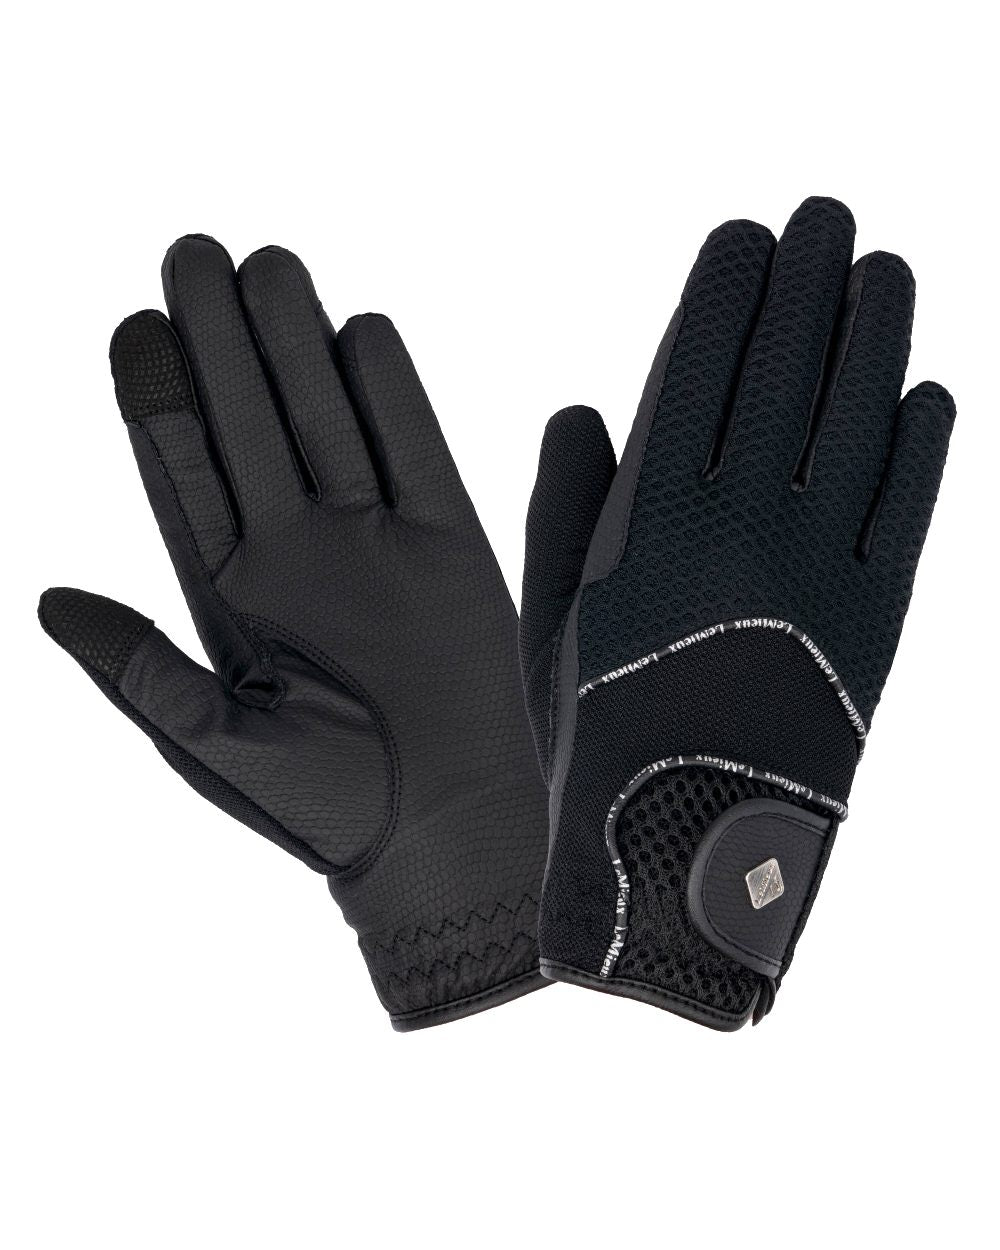 Black coloured LeMieux 3D Mesh Riding Gloves on white background 